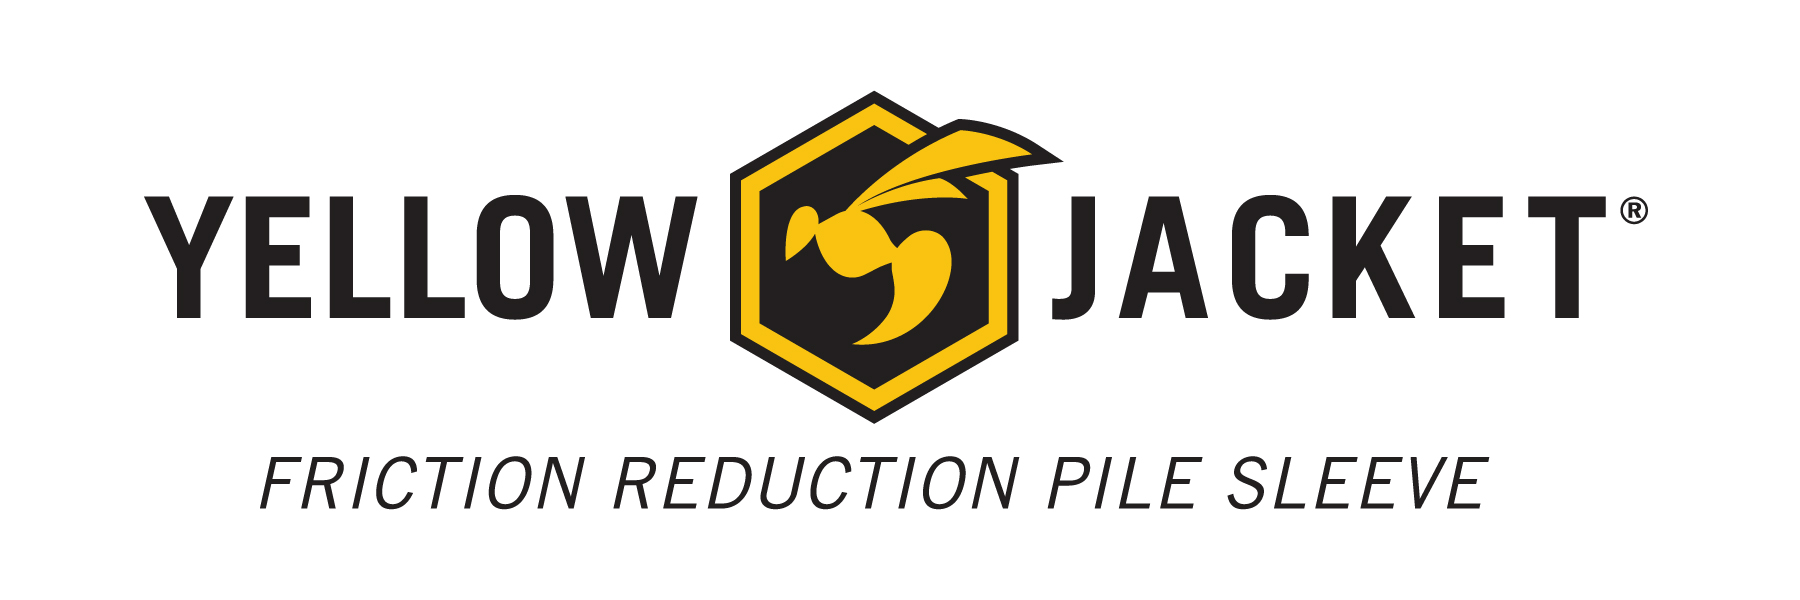 Yellow Jacket Friction Reduction Pile Sleeve Logo